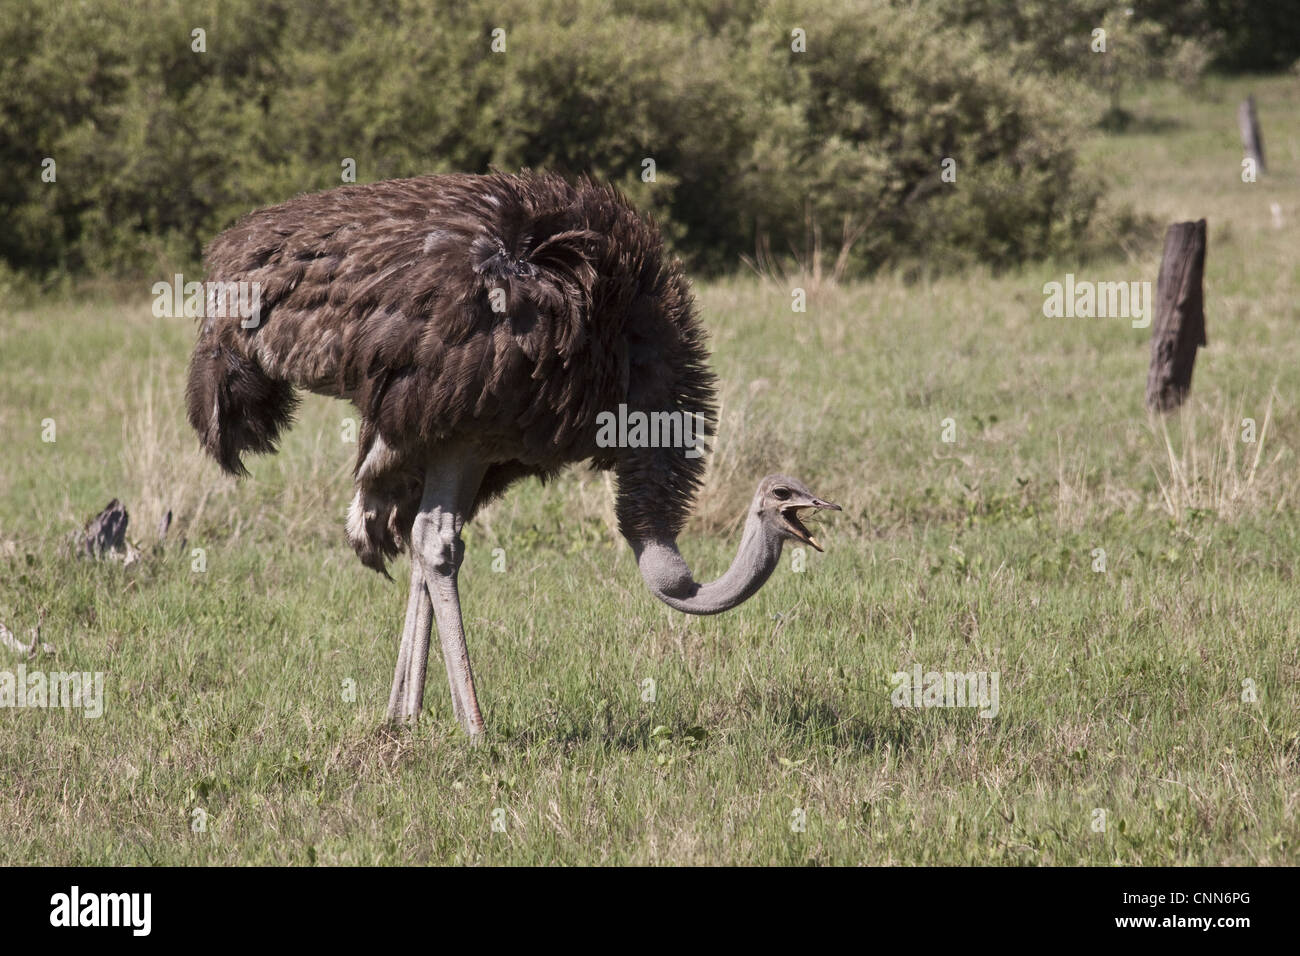 Der Strauß Struthio Camelus großen flugunfähigen Vogel heimisch in Afrika, die einzige lebende Arten Familie Struthionidae Stockfoto